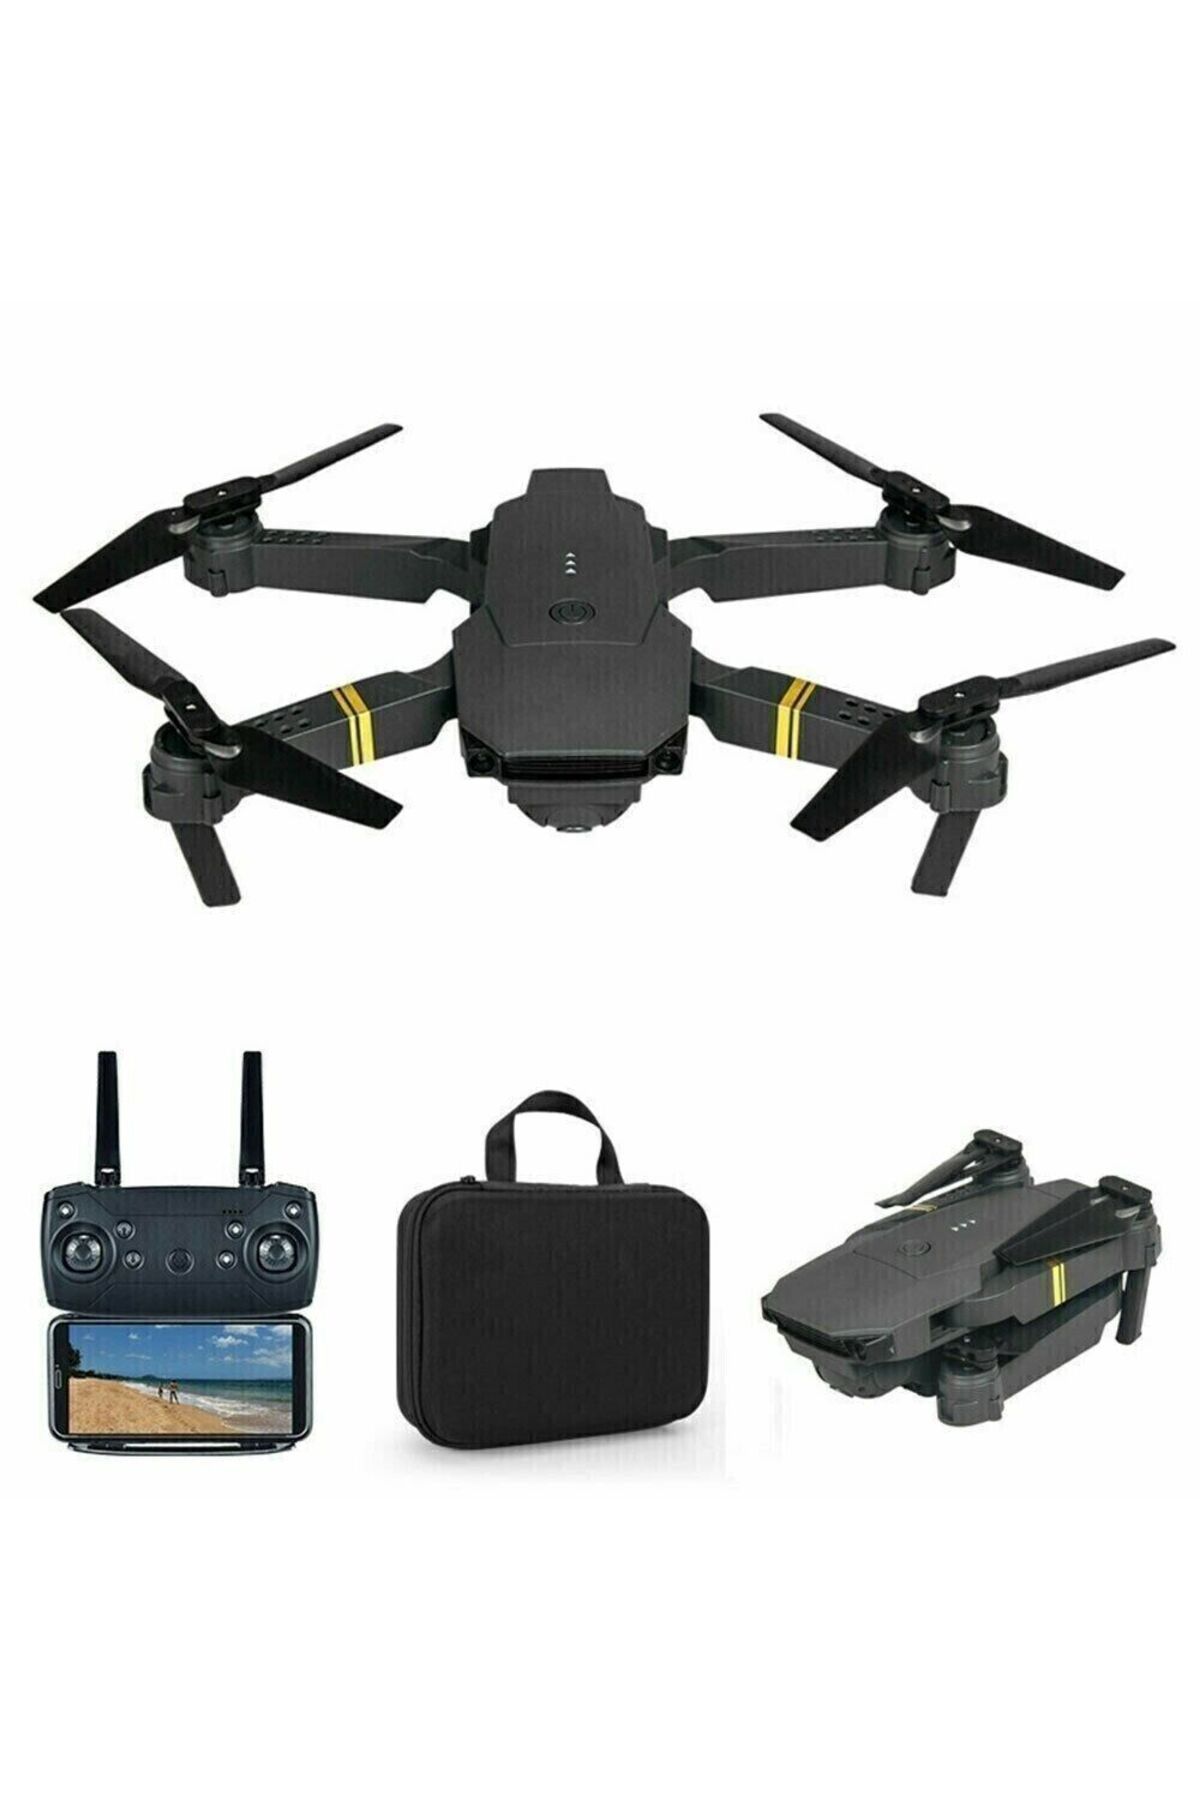 piha Yeni E58 Hd 720p Çift Kameralı Wı-fı Katlanabilir Drone Taşıma Çantalı 1 Bataryalı